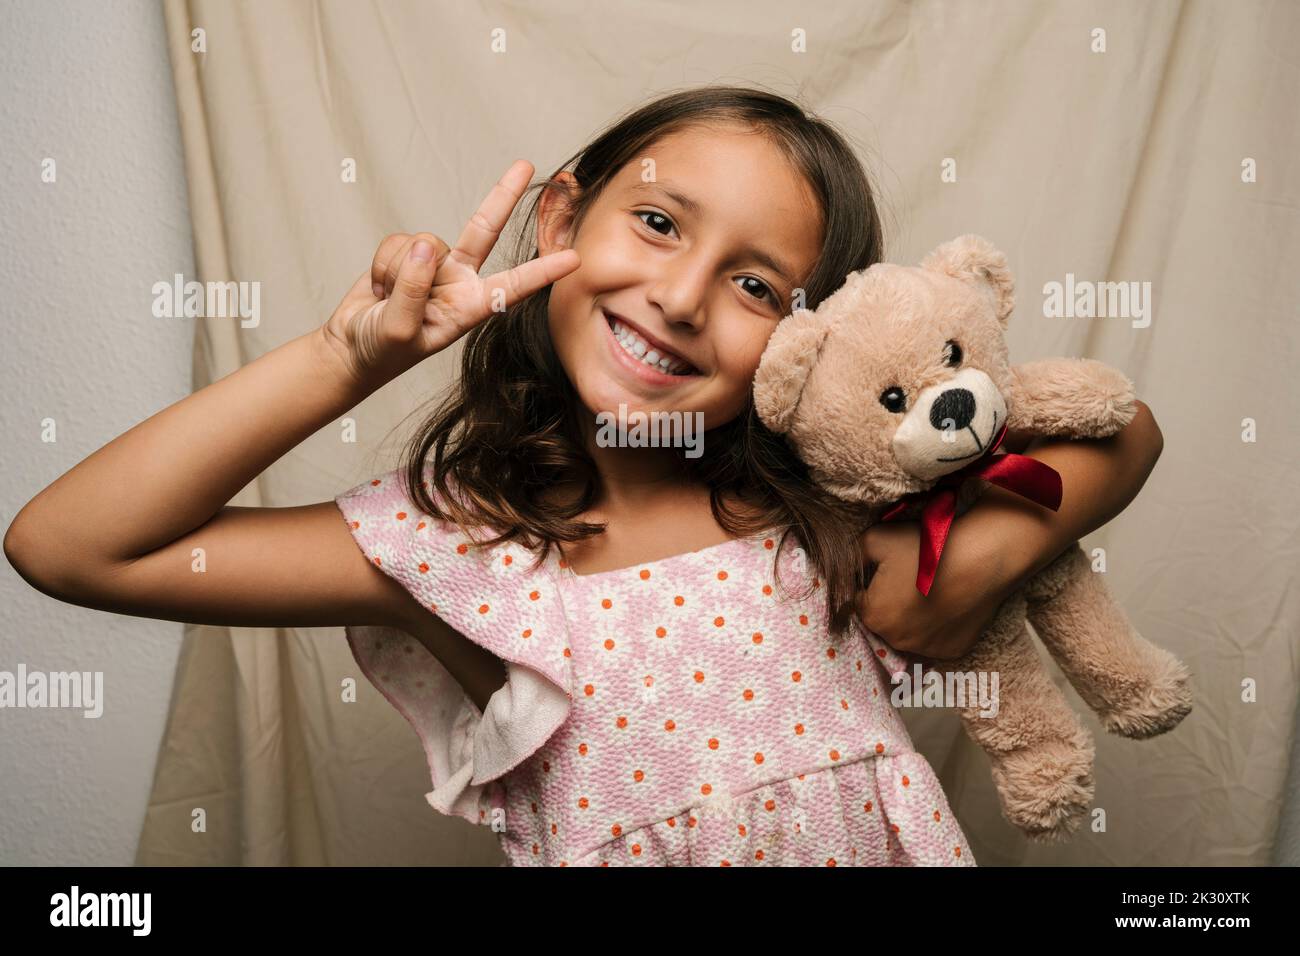 Bonne fille avec un ours en peluche signe de paix Banque D'Images